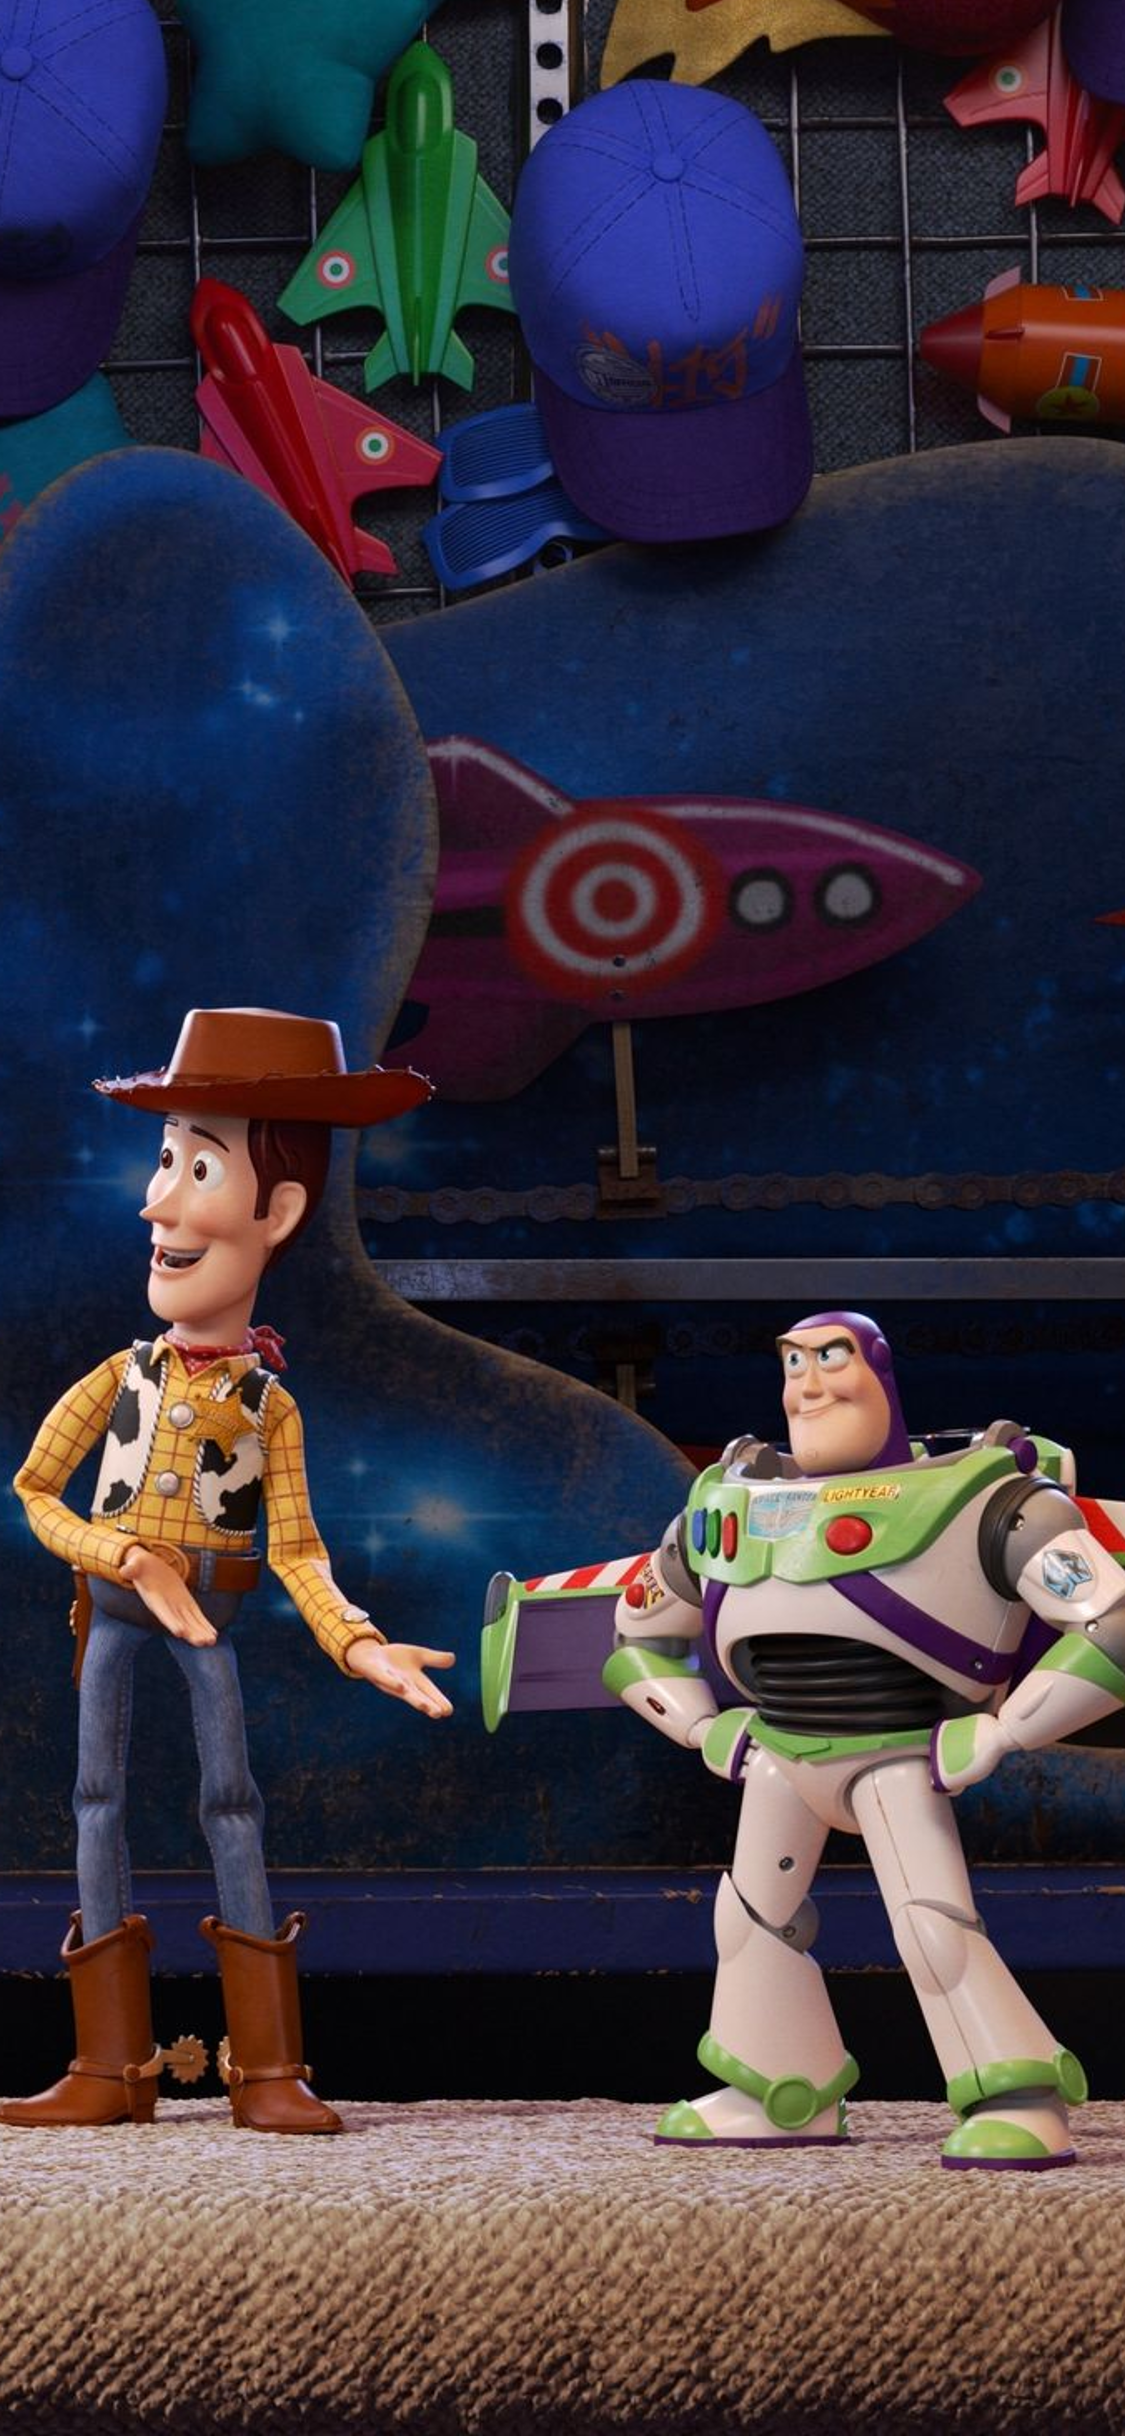 Hình Nền Điện Thoại Toy Story 4: Bộ hình nền độc đáo lấy cảm hứng từ bộ phim hoạt hình ăn khách Toy Story 